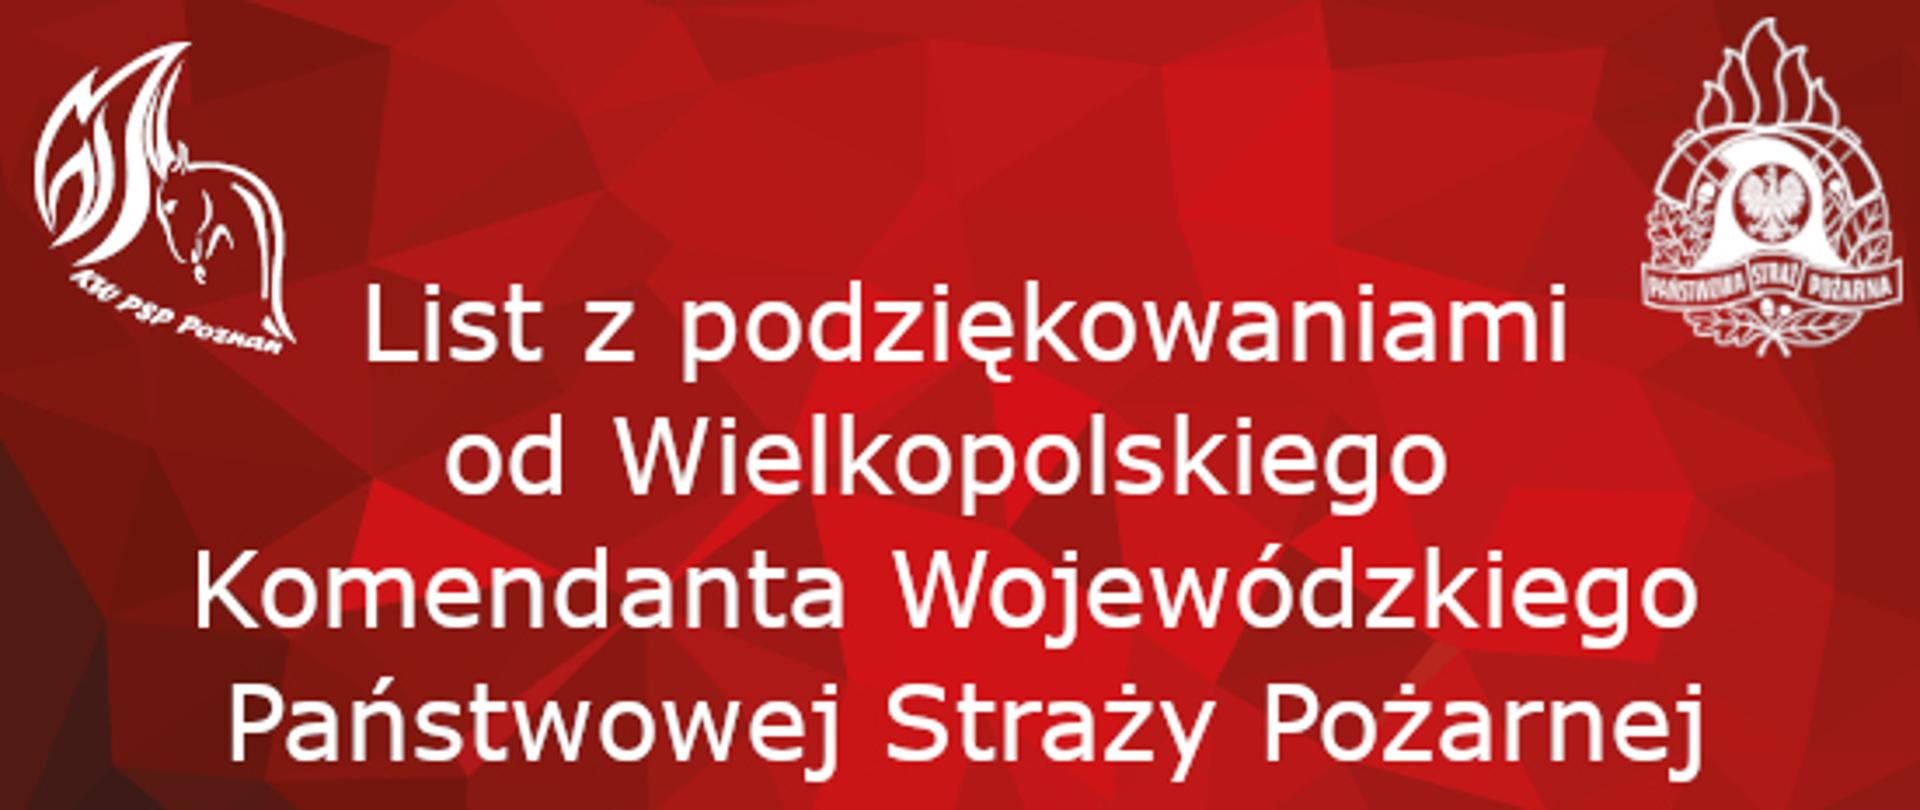 baner z napisem List z podziękowaniami od Wielkopolskiego Komendanta Wojewódzkiego Państwowej Straży Pożarnej 